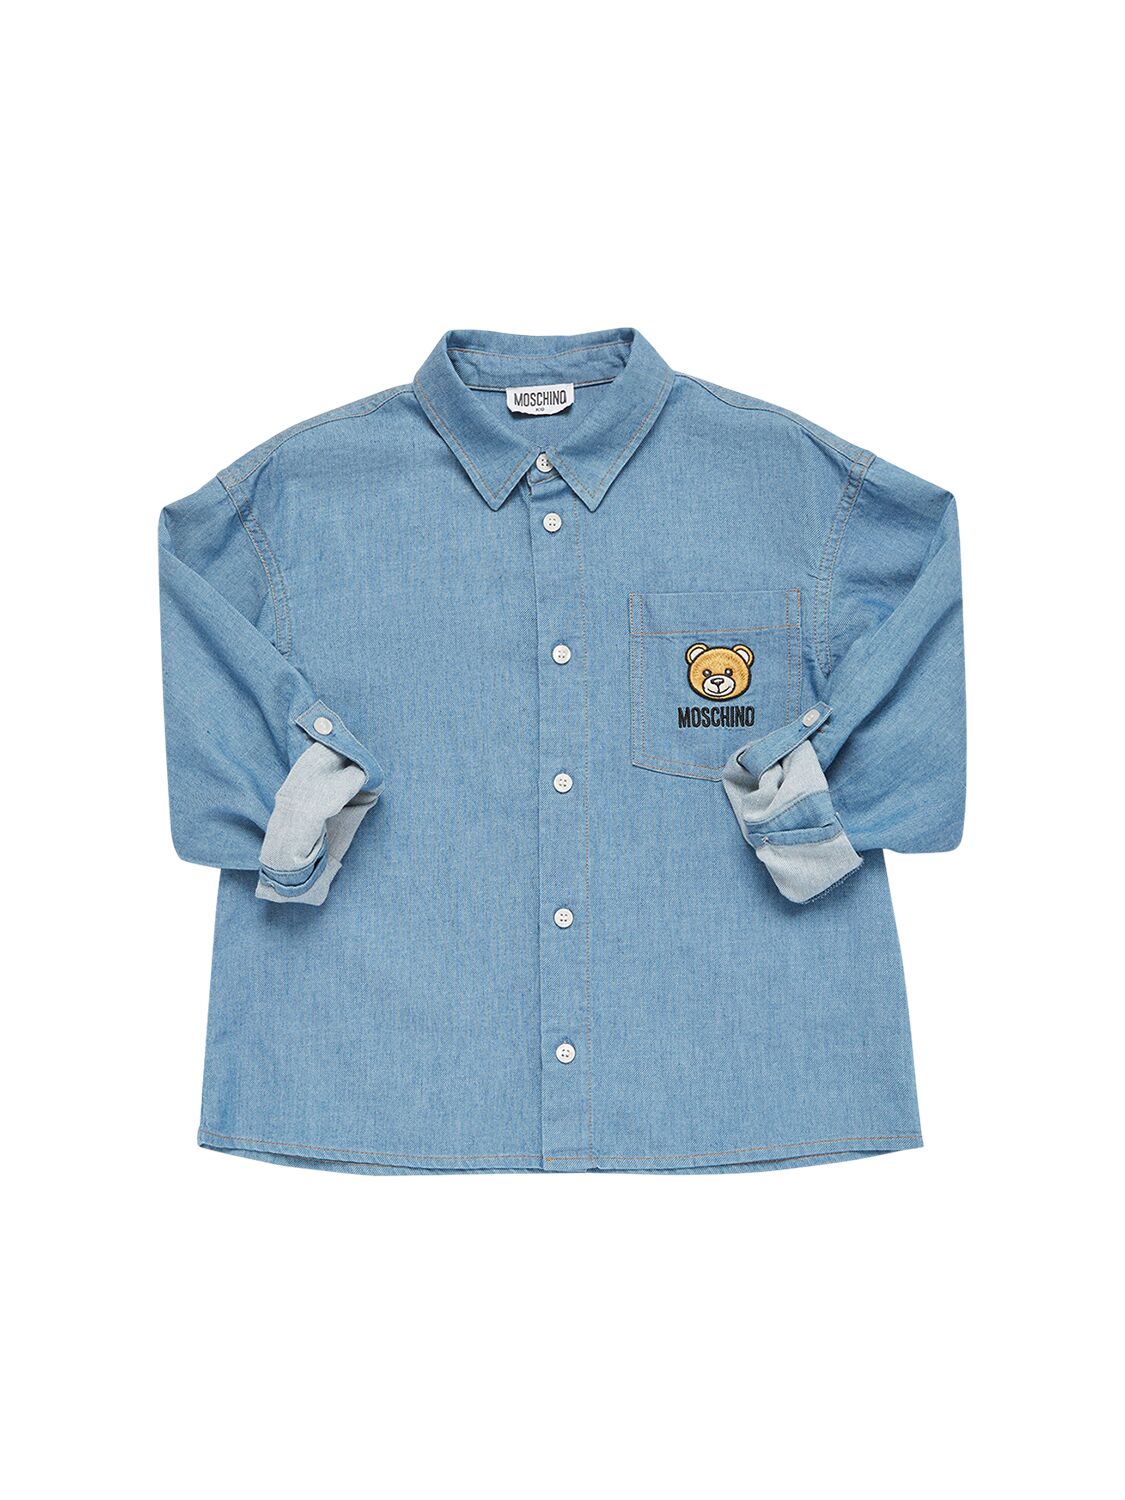 Moschino Kids' Cotton Chambray Shirt In Denim